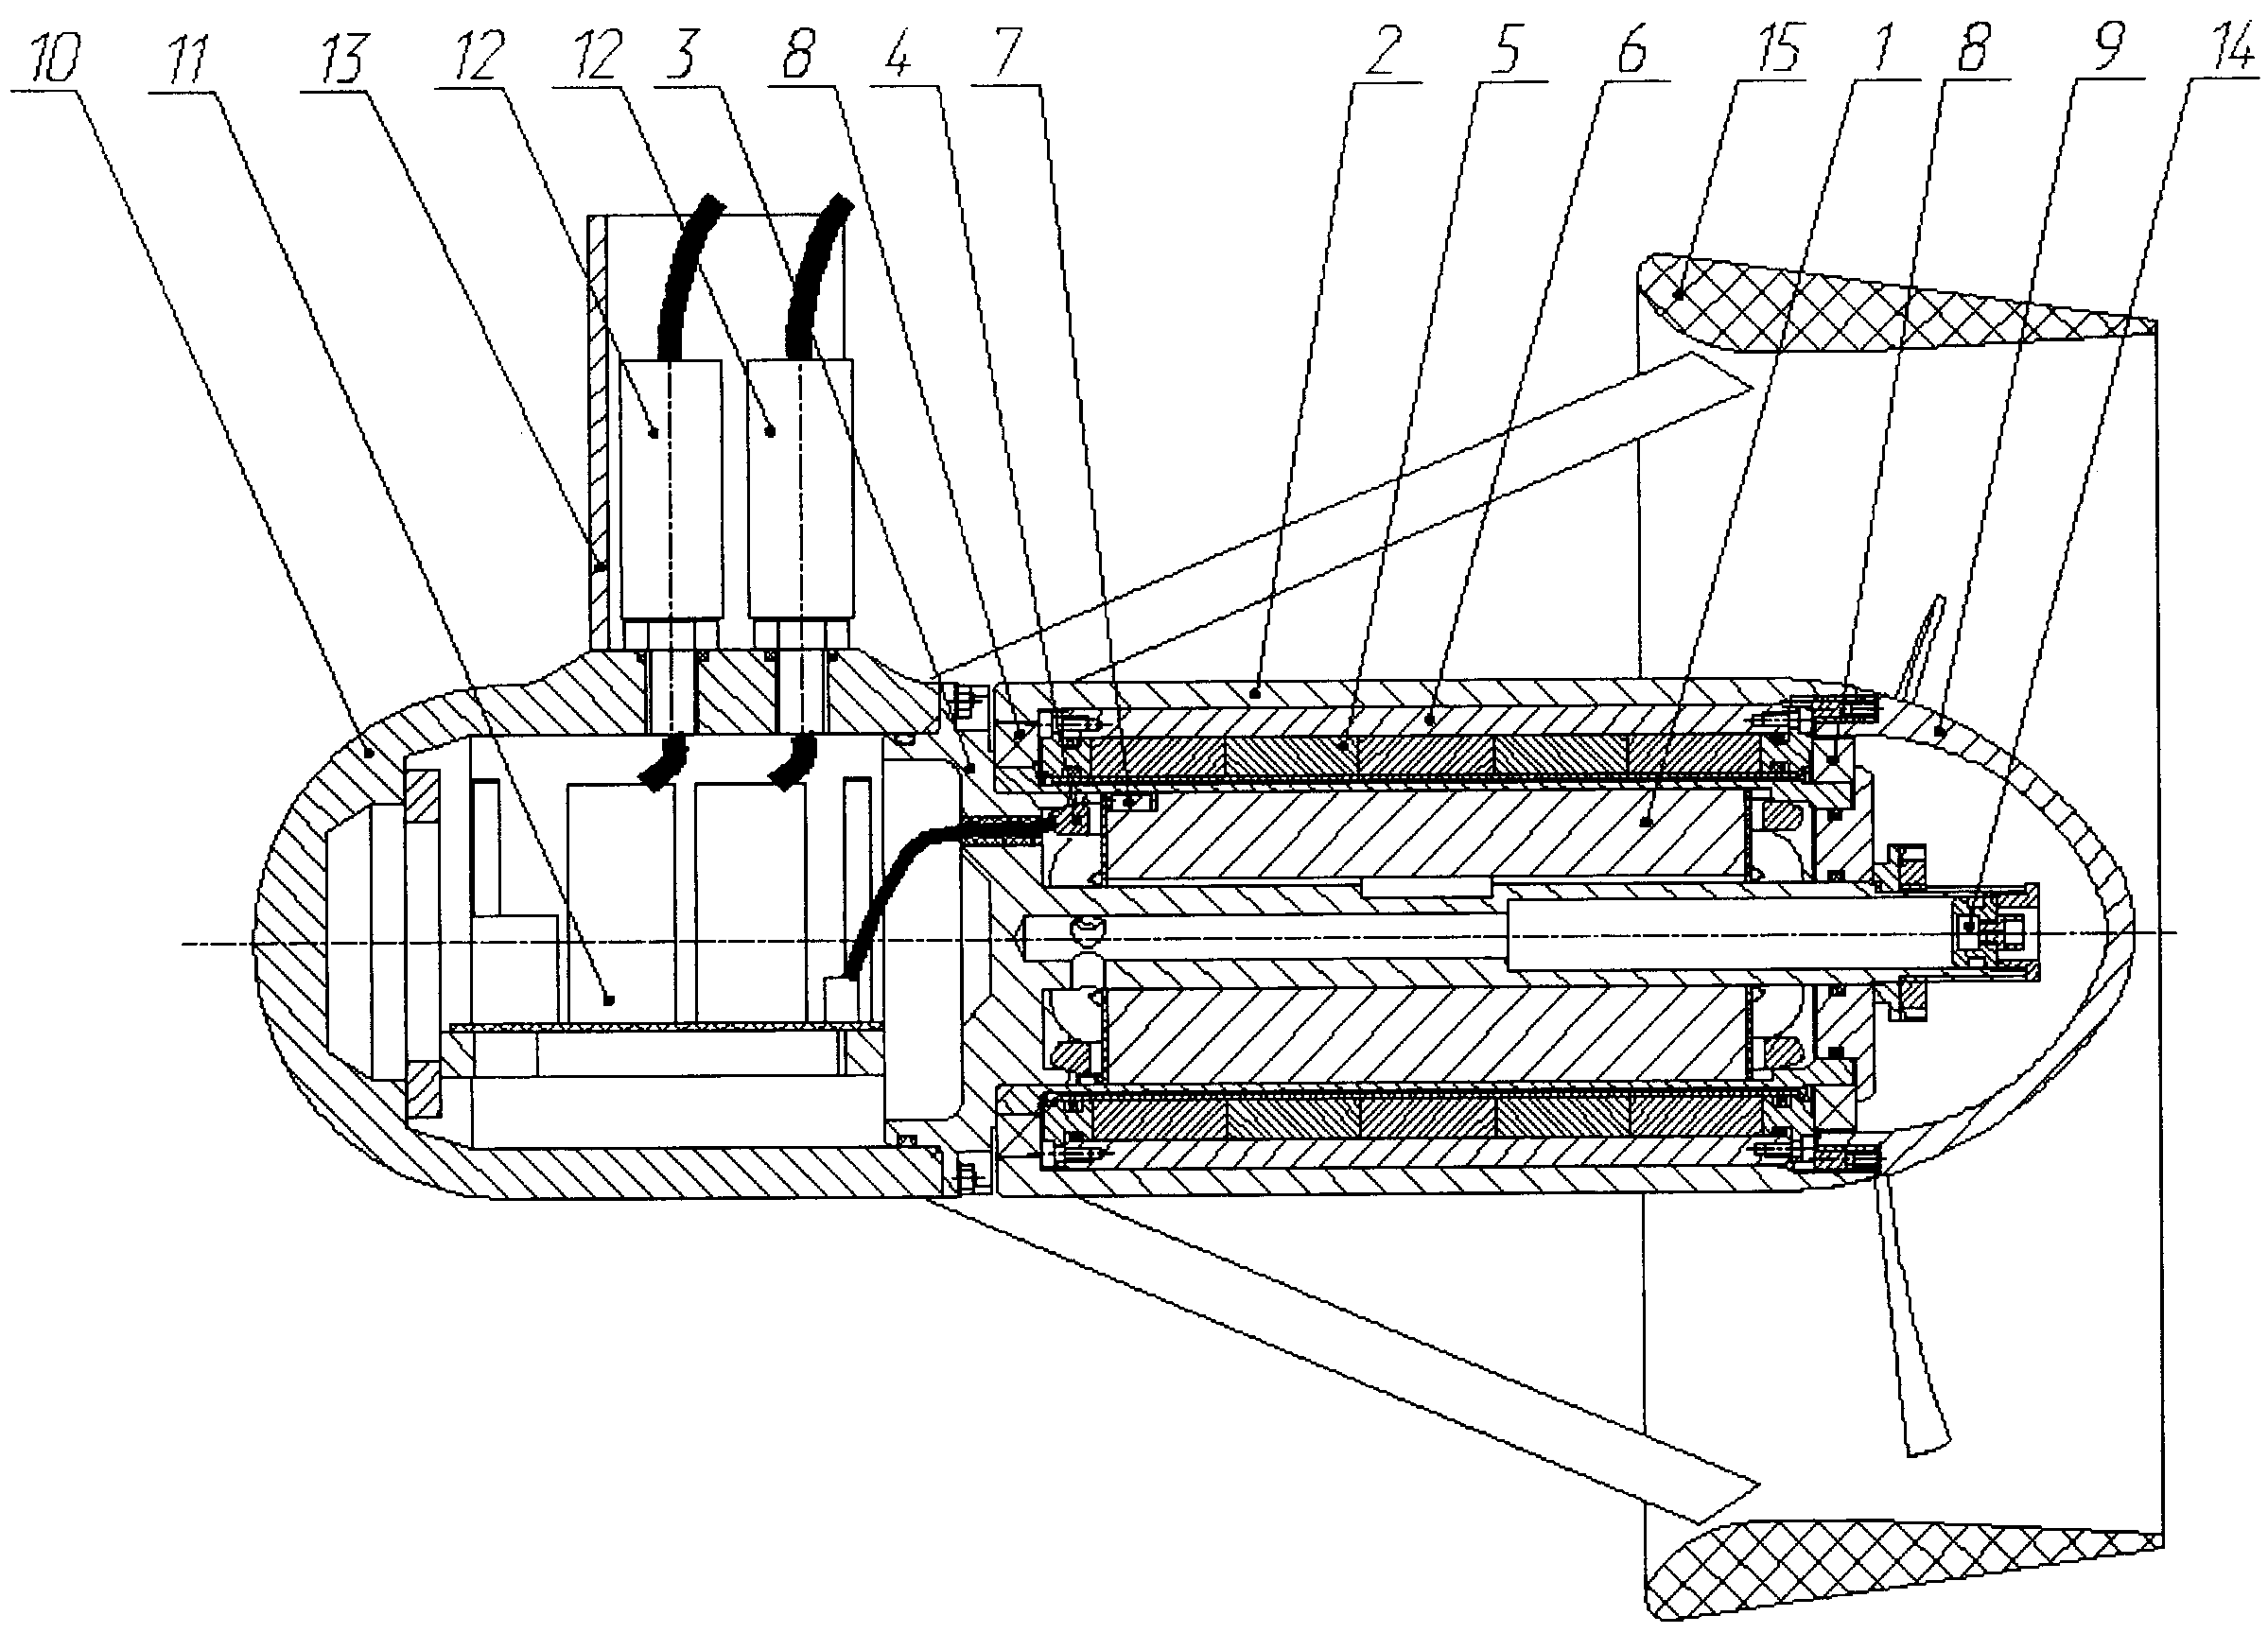 Двигательная установка подводного аппарата